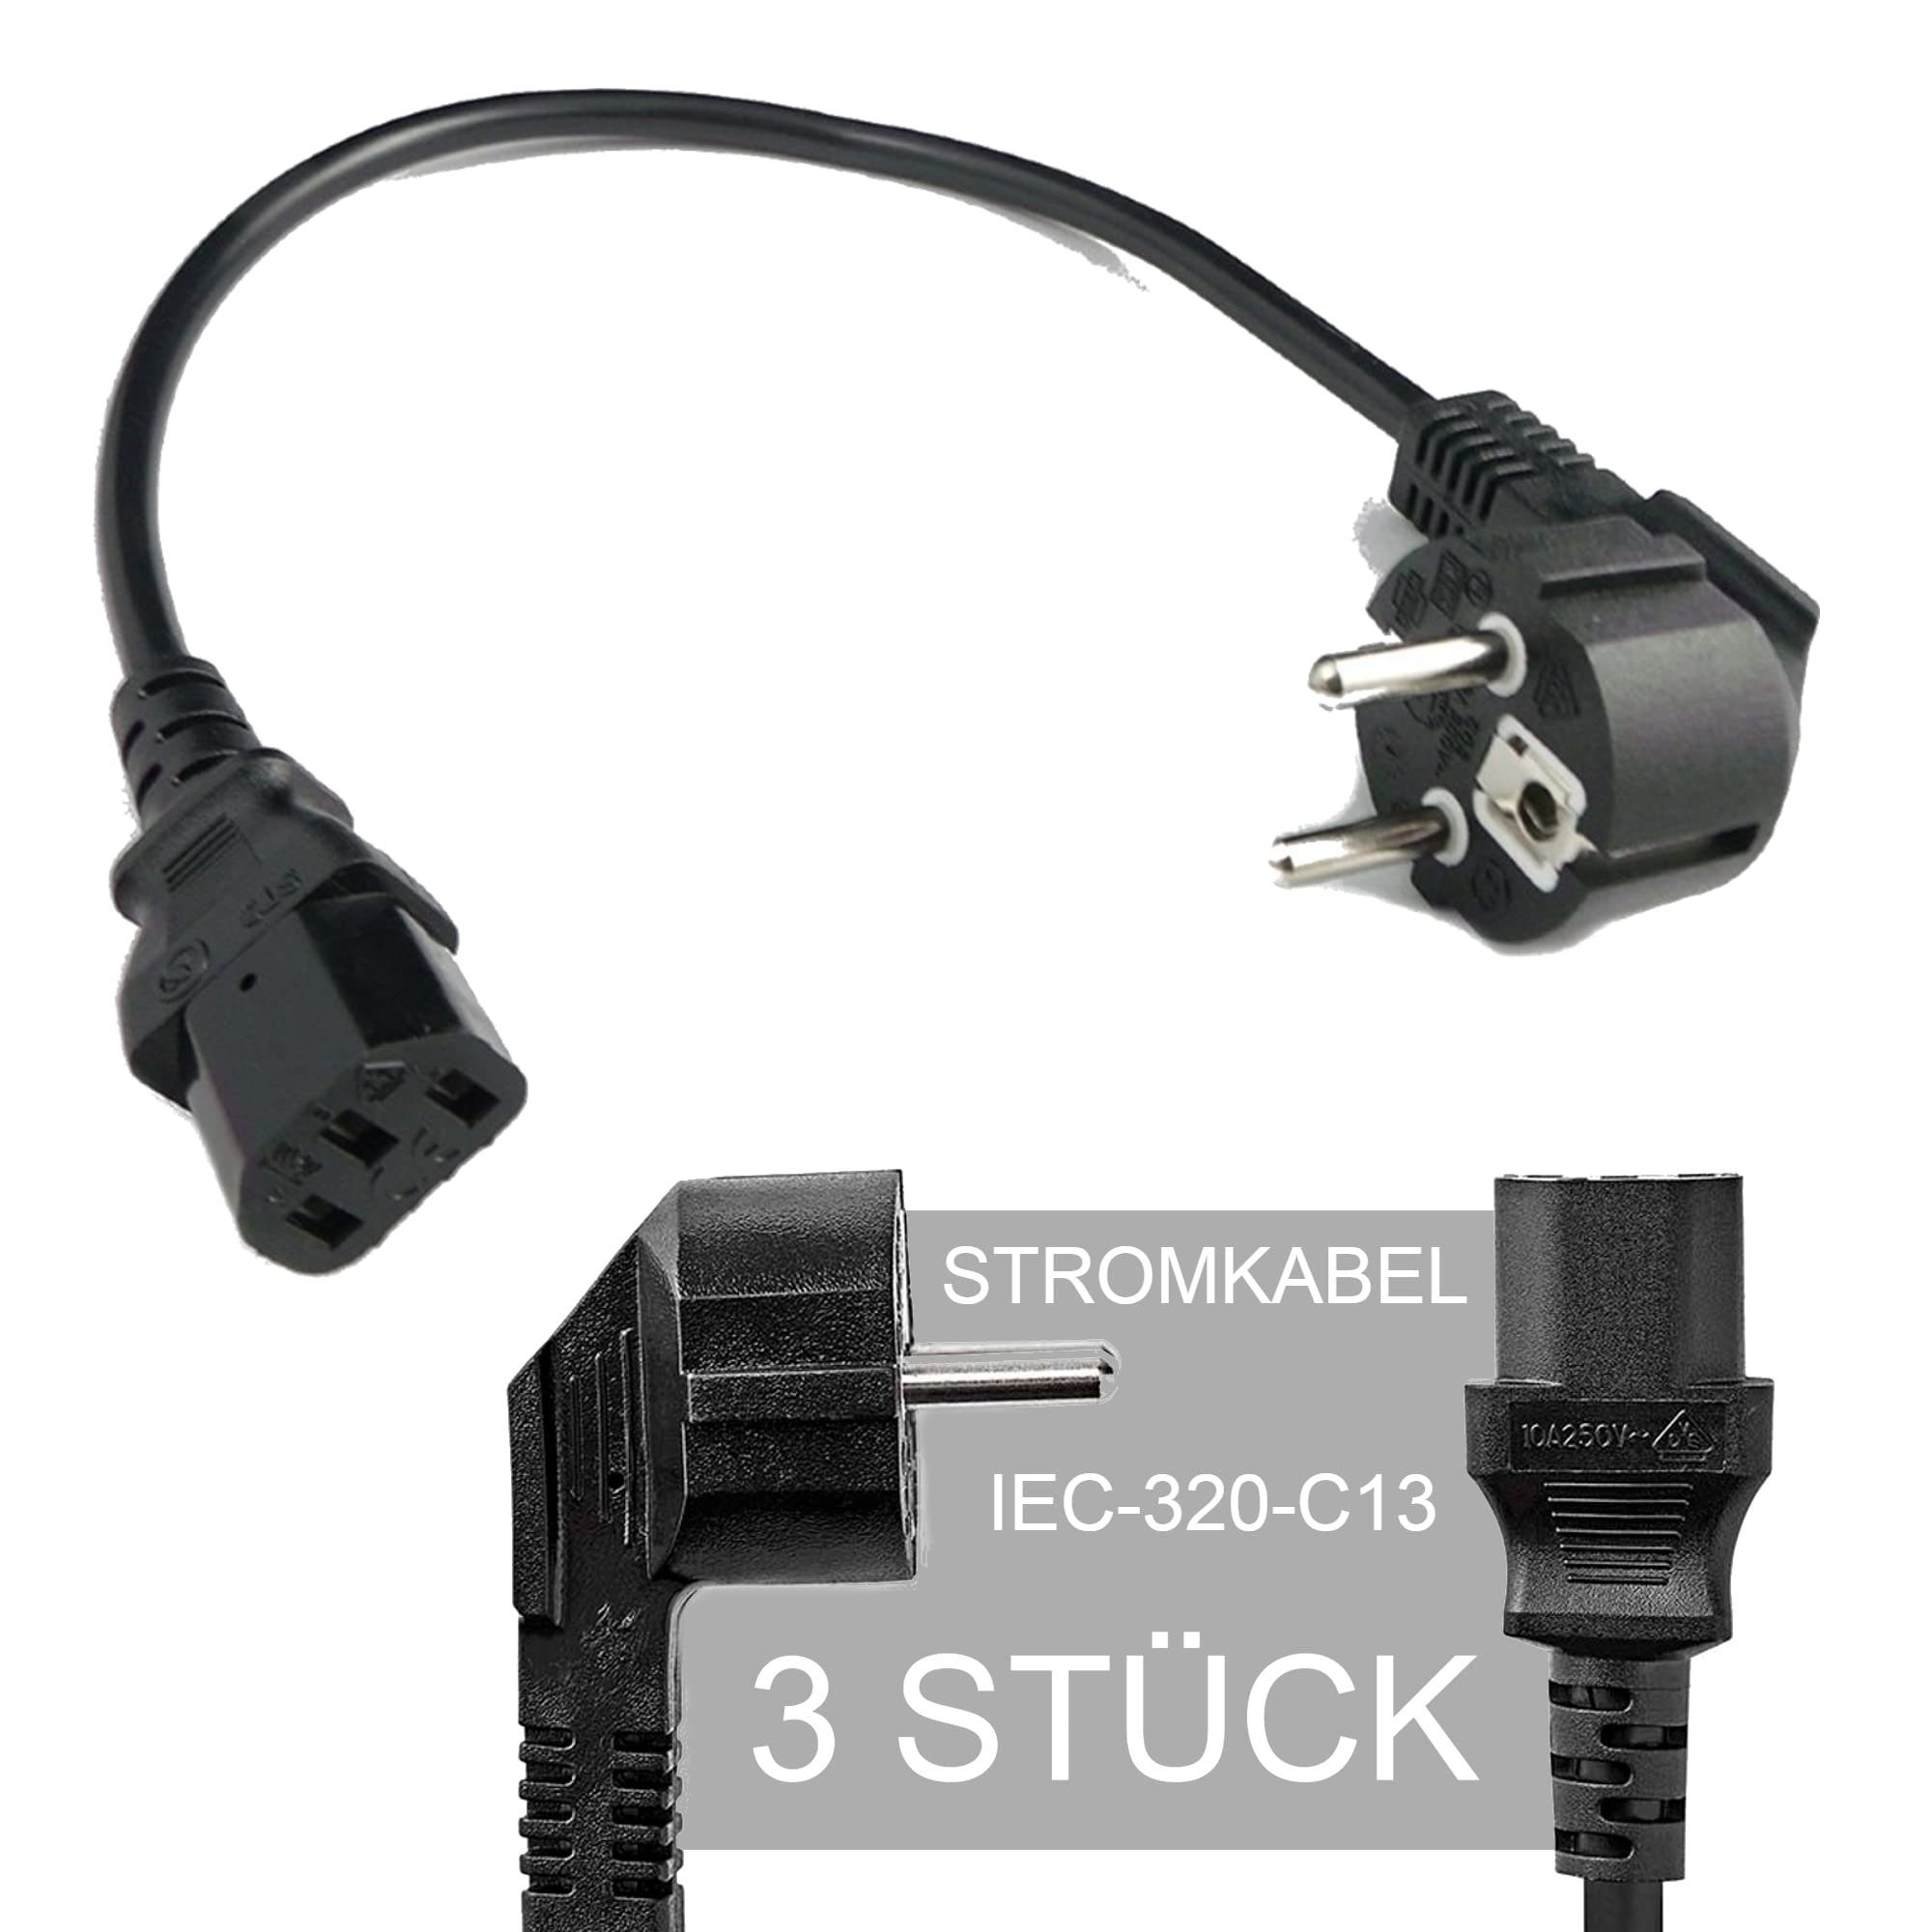 TronicXL 3 Stück Stromkabel Kaltgerätekabel IEC-320-C13 Stromkabel Kurzes 0,4m kurz Kabel